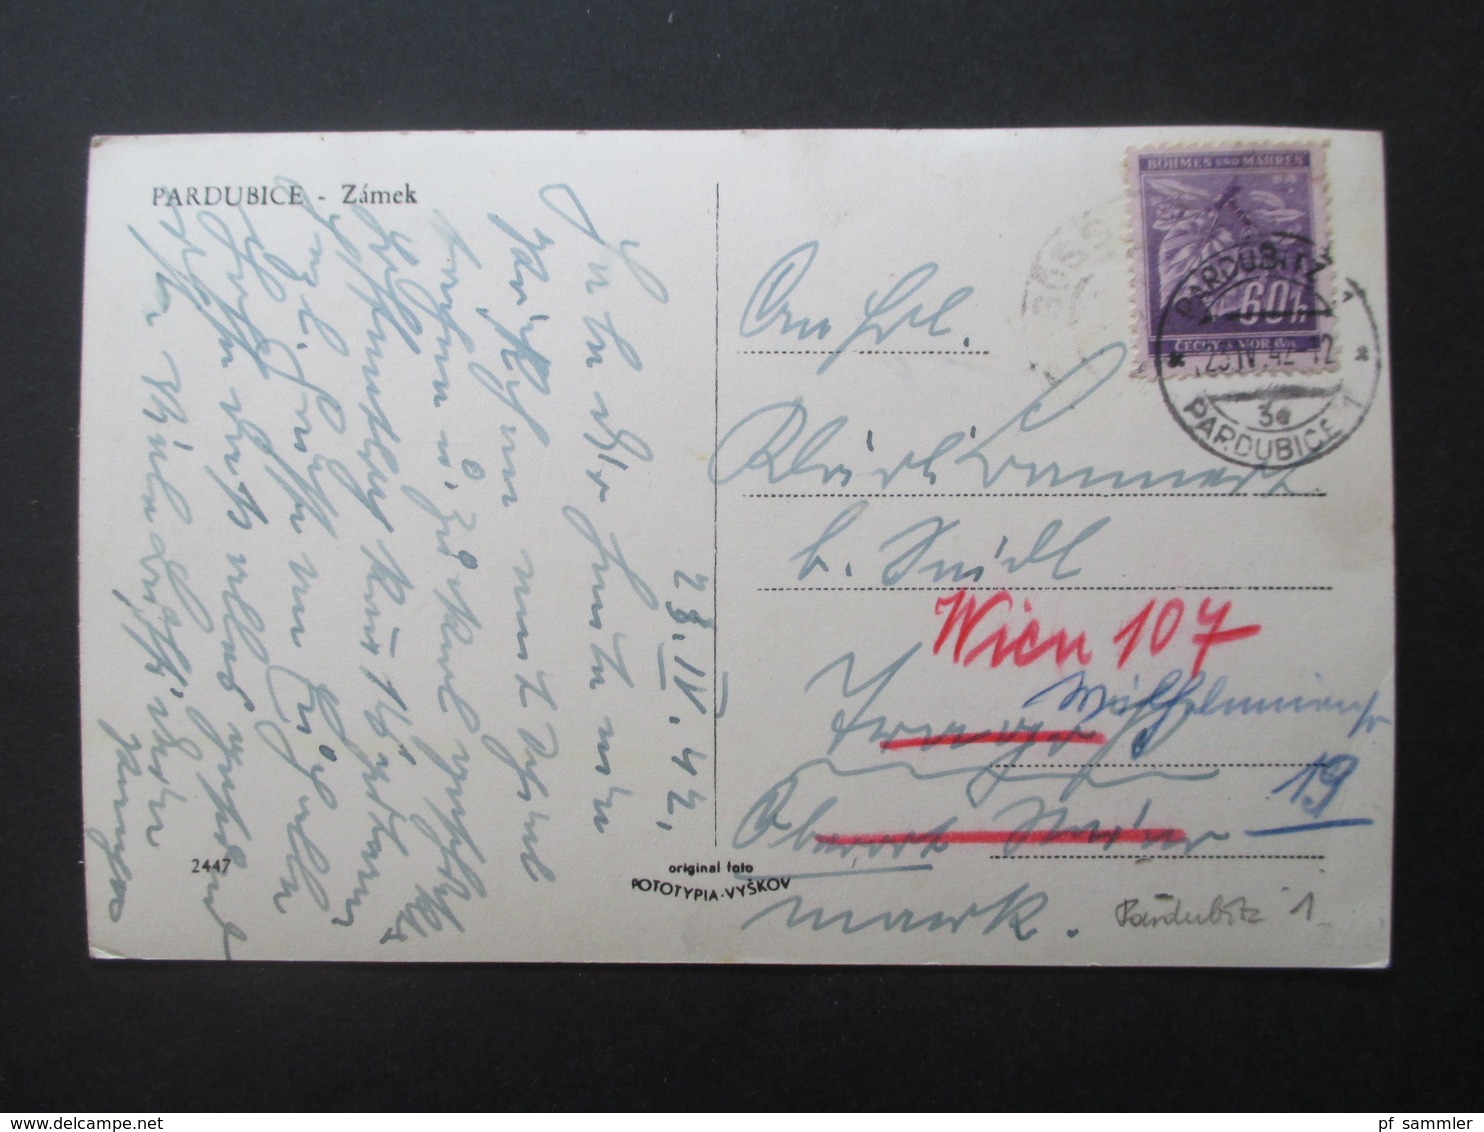 Ansichtskarten Böhmen und Mähren 1942 / 43 viele verschiedene Stempel und Karten! 36 Stück! Auch ein Mitläufer aus 1939